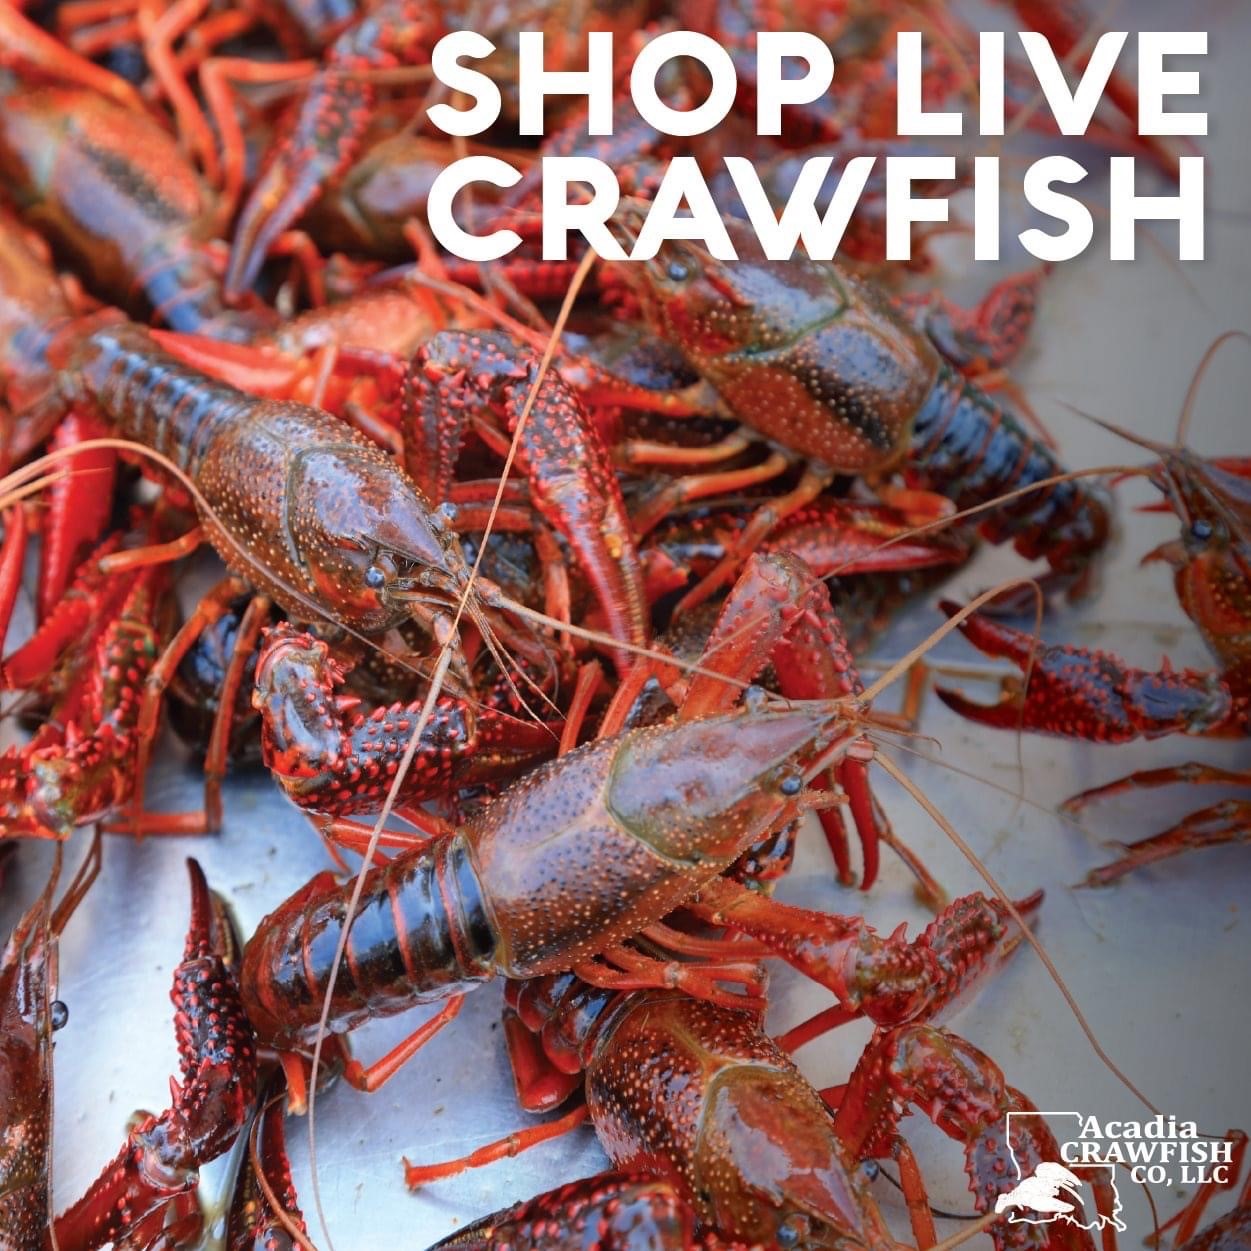 Full Sacks of Live Crawfish - Order Online